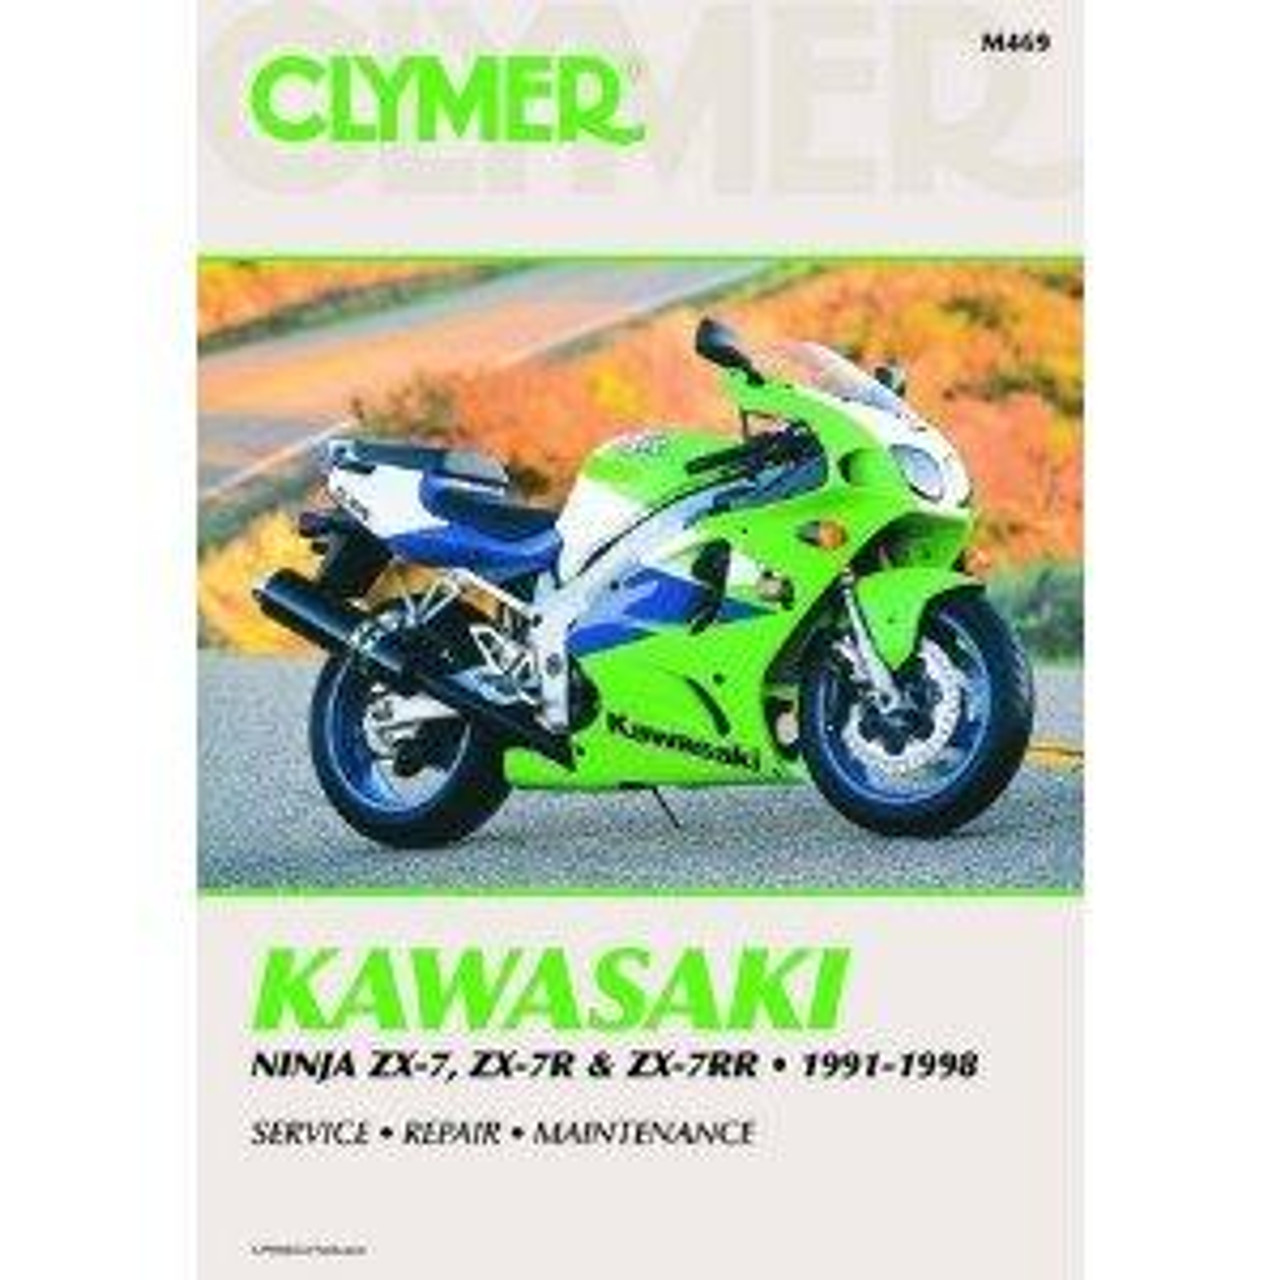 Clymer New Manual - Kawasaki Zx7 Ninja, M469